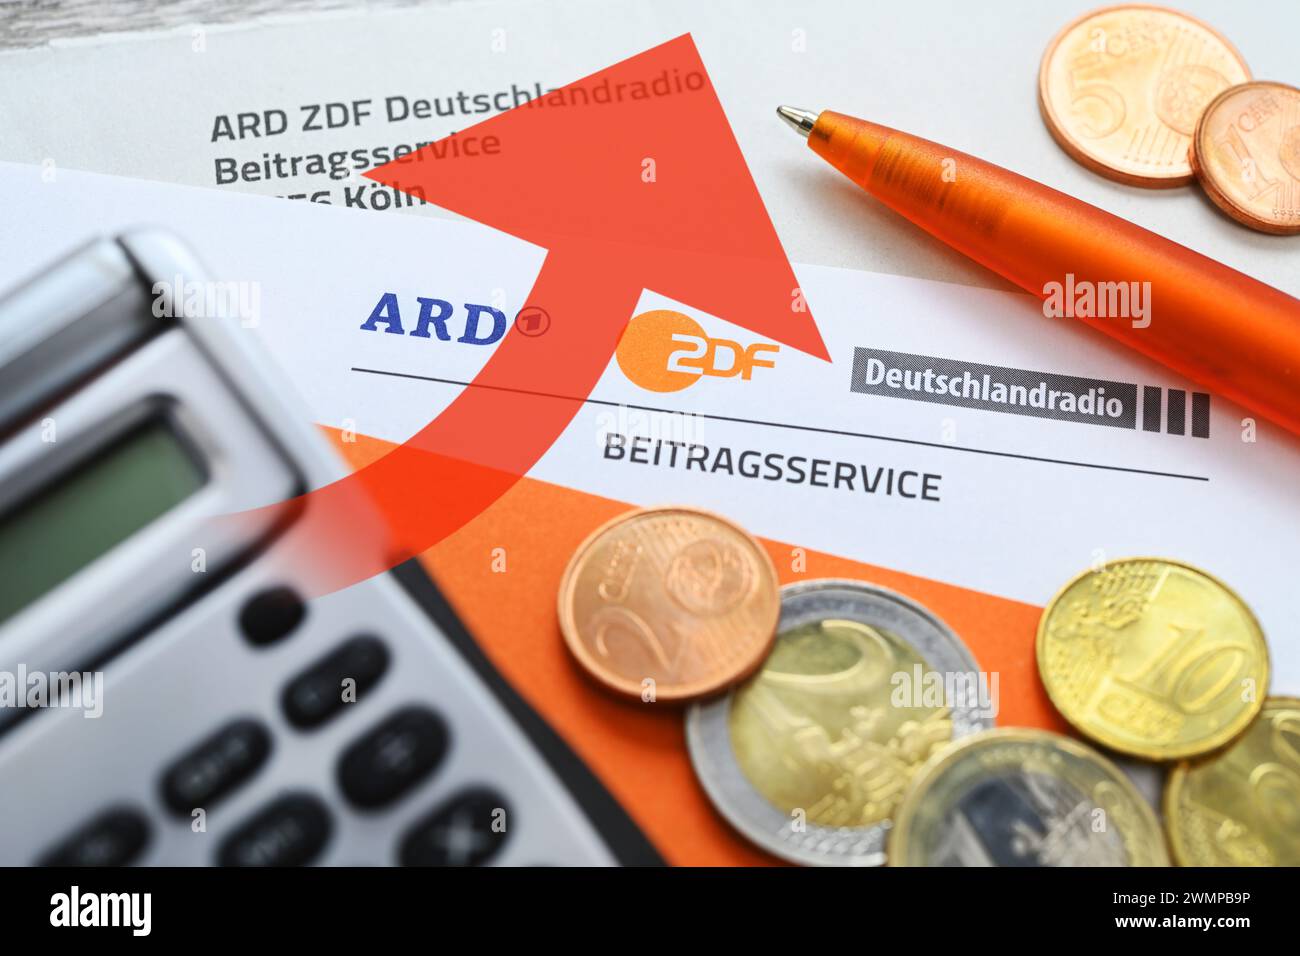 Lettera di ARD ZDF Deutschlandradio Beitragsservice con monete e Freccia Rising, foto simbolica dell'aumento della tassa di trasmissione, fotomontaggio Foto Stock